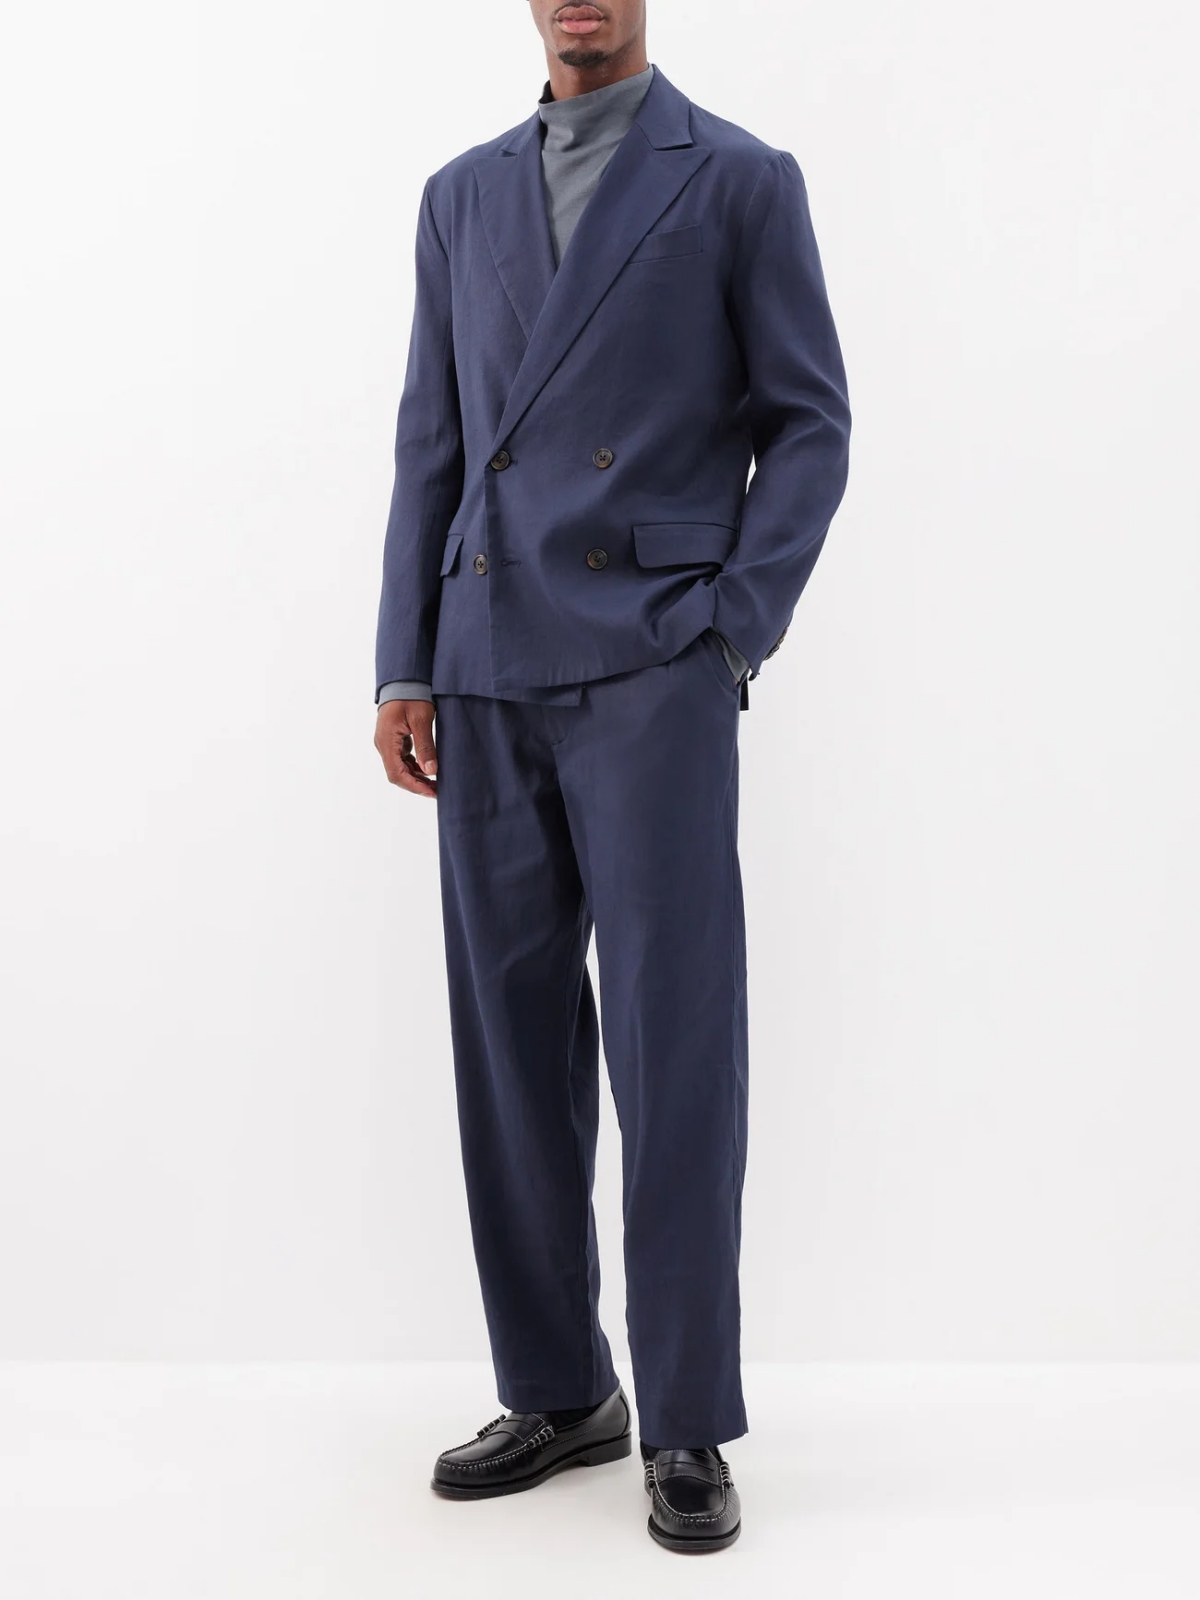 linen suits